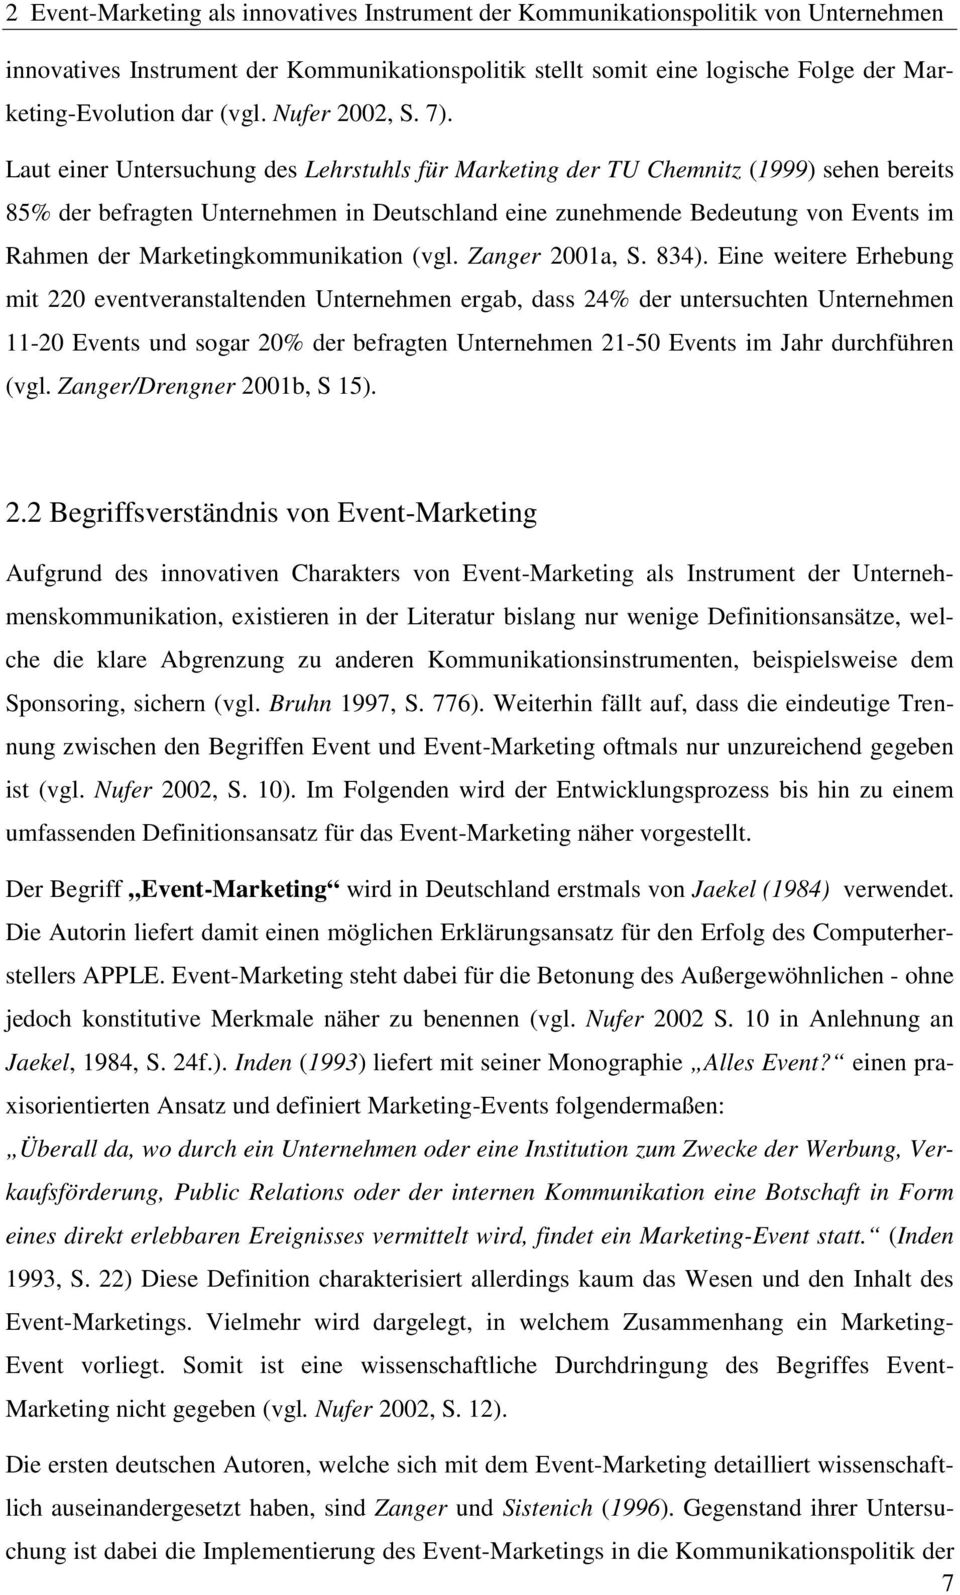 Laut einer Untersuchung des Lehrstuhls für Marketing der TU Chemnitz (1999) sehen bereits 85% der befragten Unternehmen in Deutschland eine zunehmende Bedeutung von Events im Rahmen der